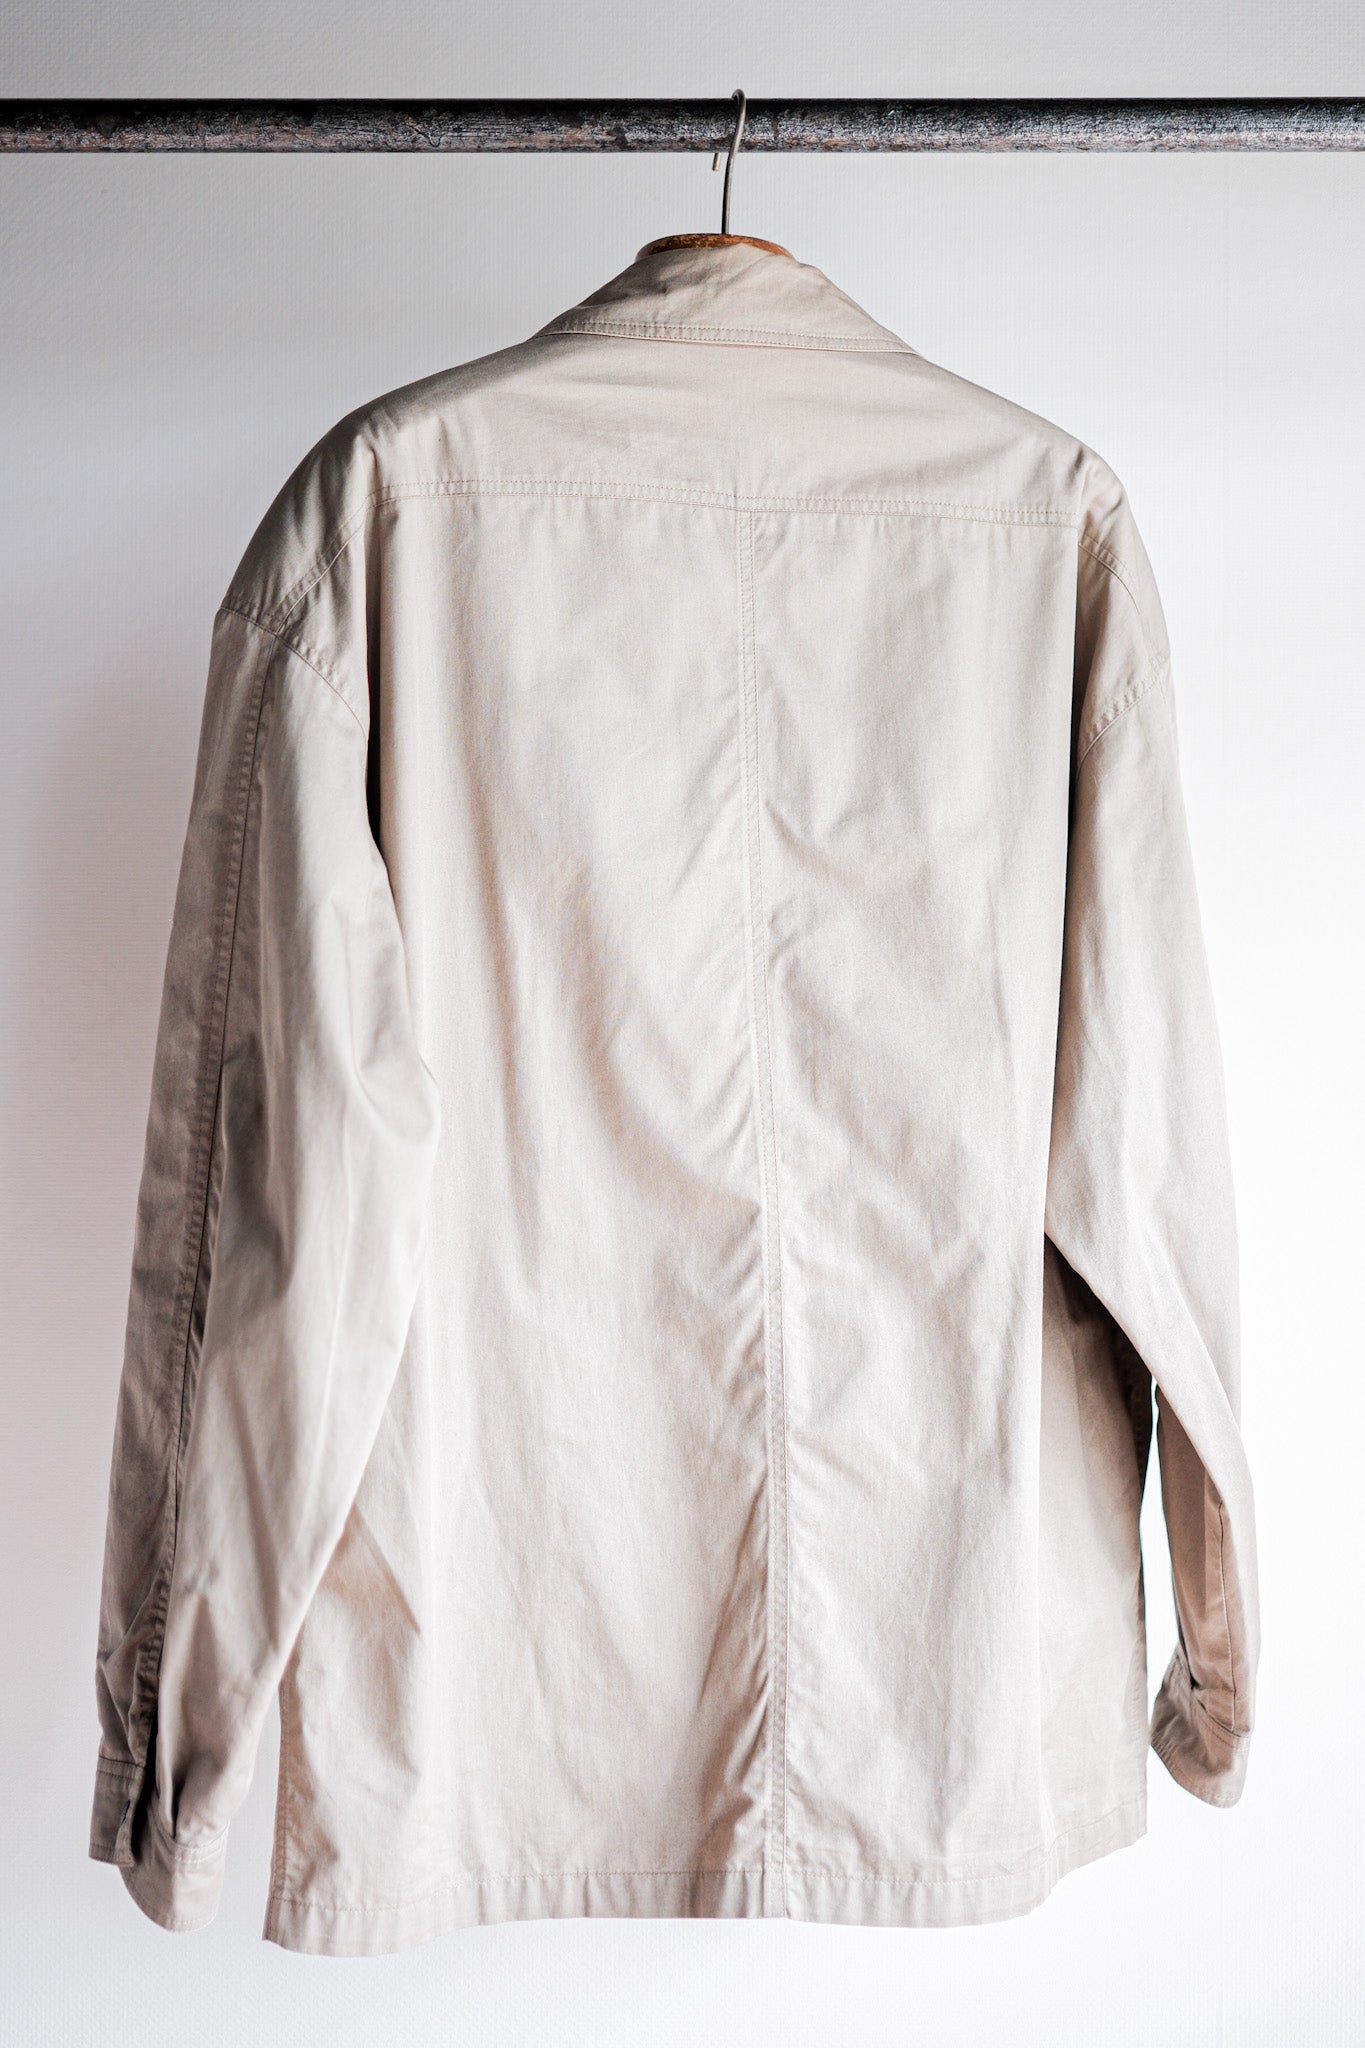 [~ 70's] Old gucci multi-poche coton veste.